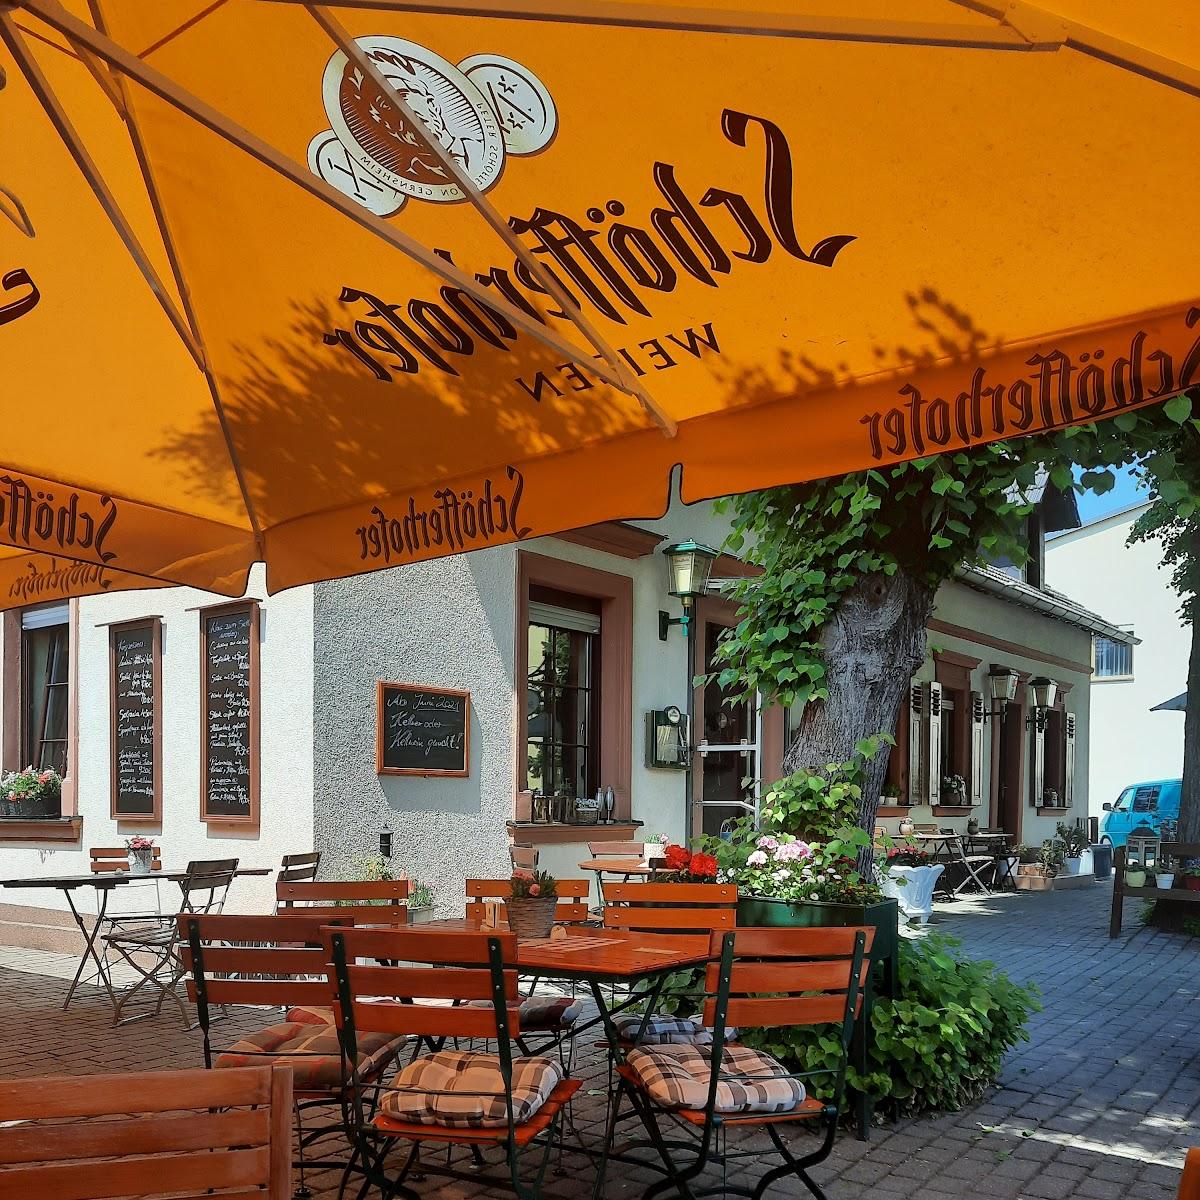 Restaurant "Gaststätte Zum Moritz" in Coswig